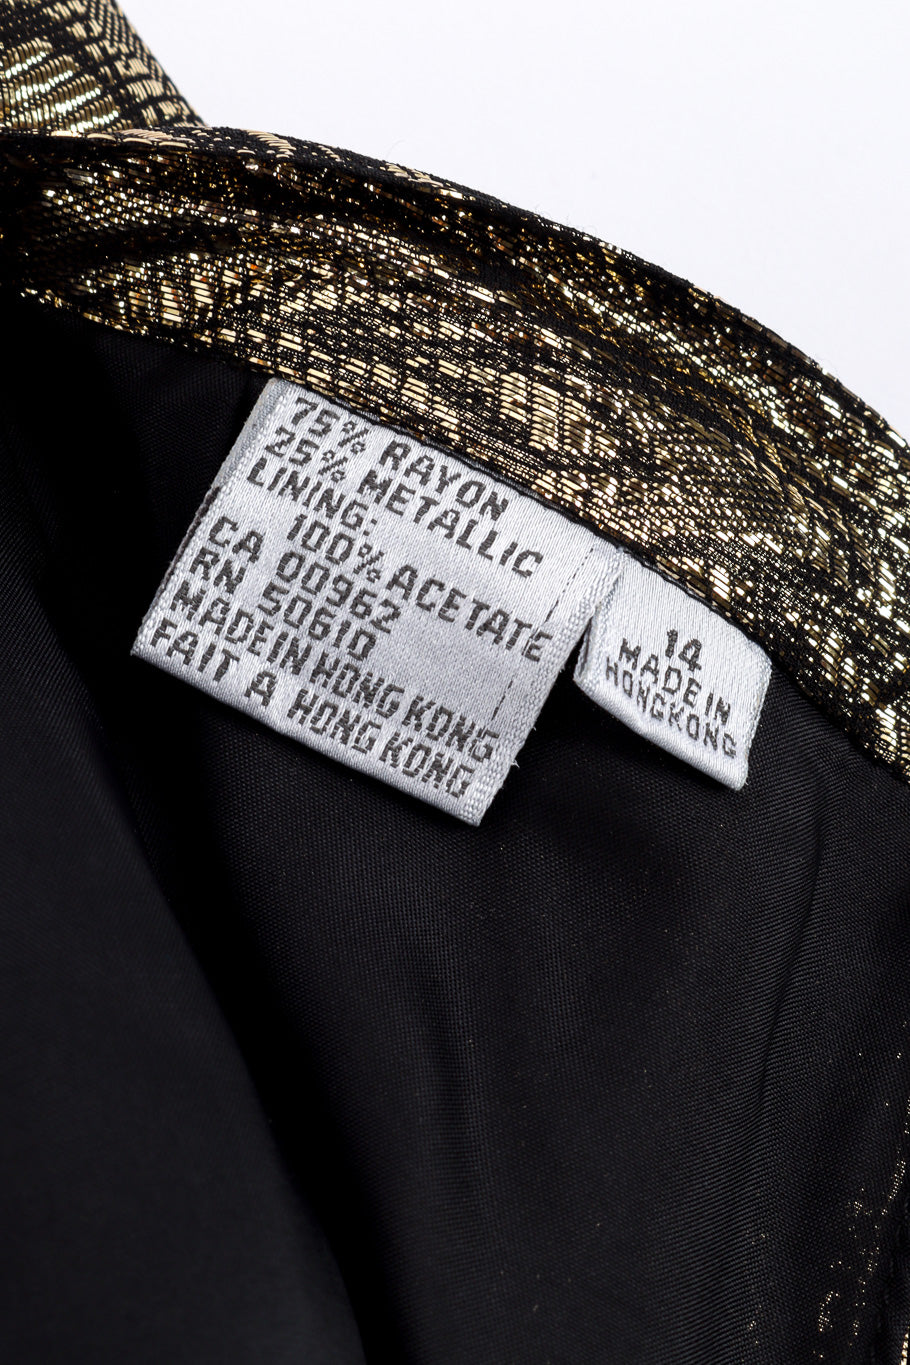 Vintage Nolan Miller Lamé Jacquard Blouse & Skirt Set content label closeup @recessla